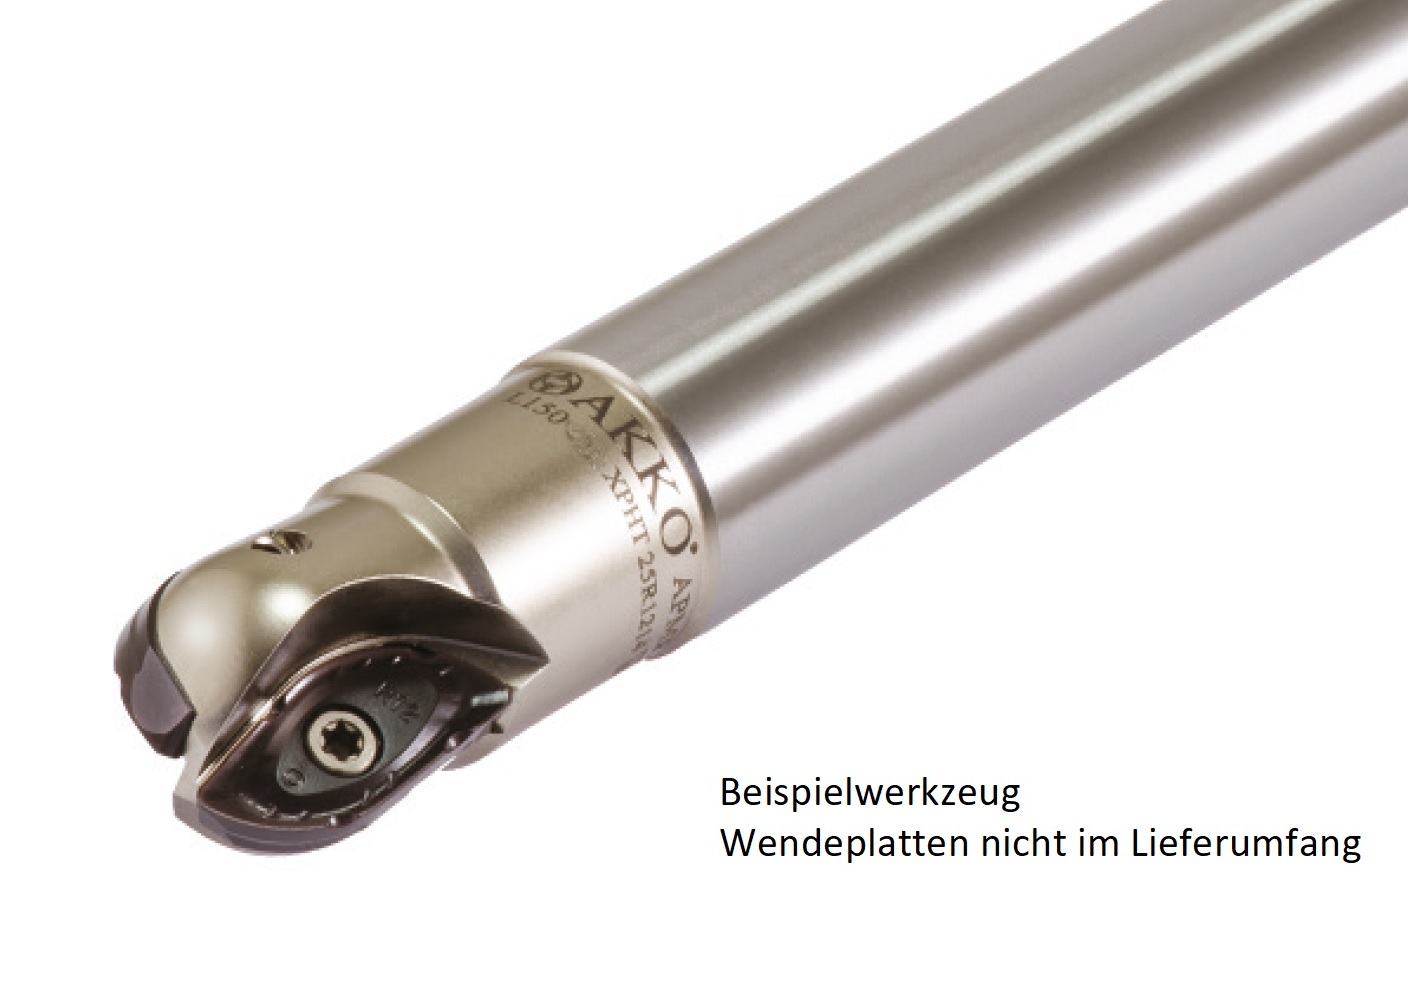 AKKO-Kugelkopierfräser für Wendeplatten, ø 16 mm, kompatibel mit ZCC XPHT 16R0803
Schaft-ø 16, ohne Innenkühlung